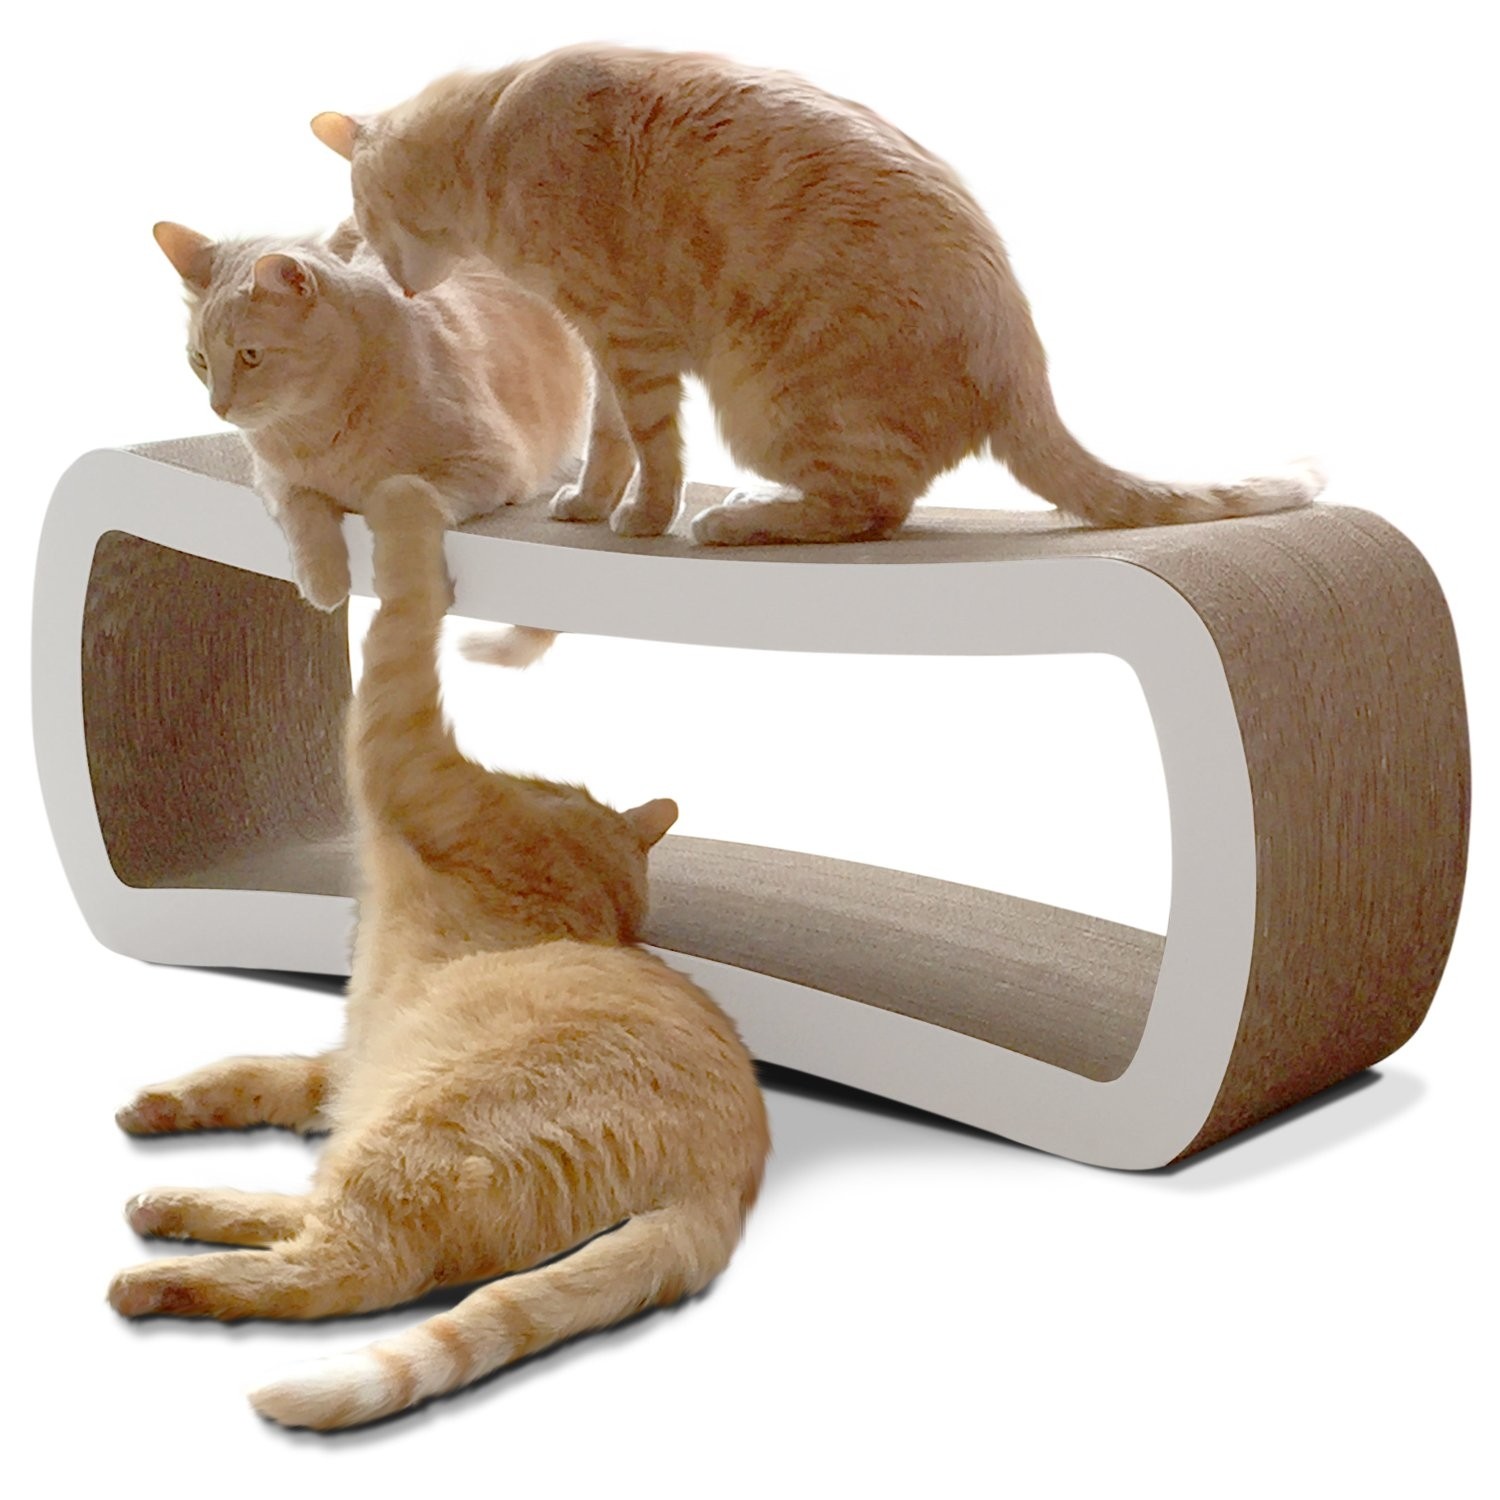 Cardboard cat scratcher bed uk